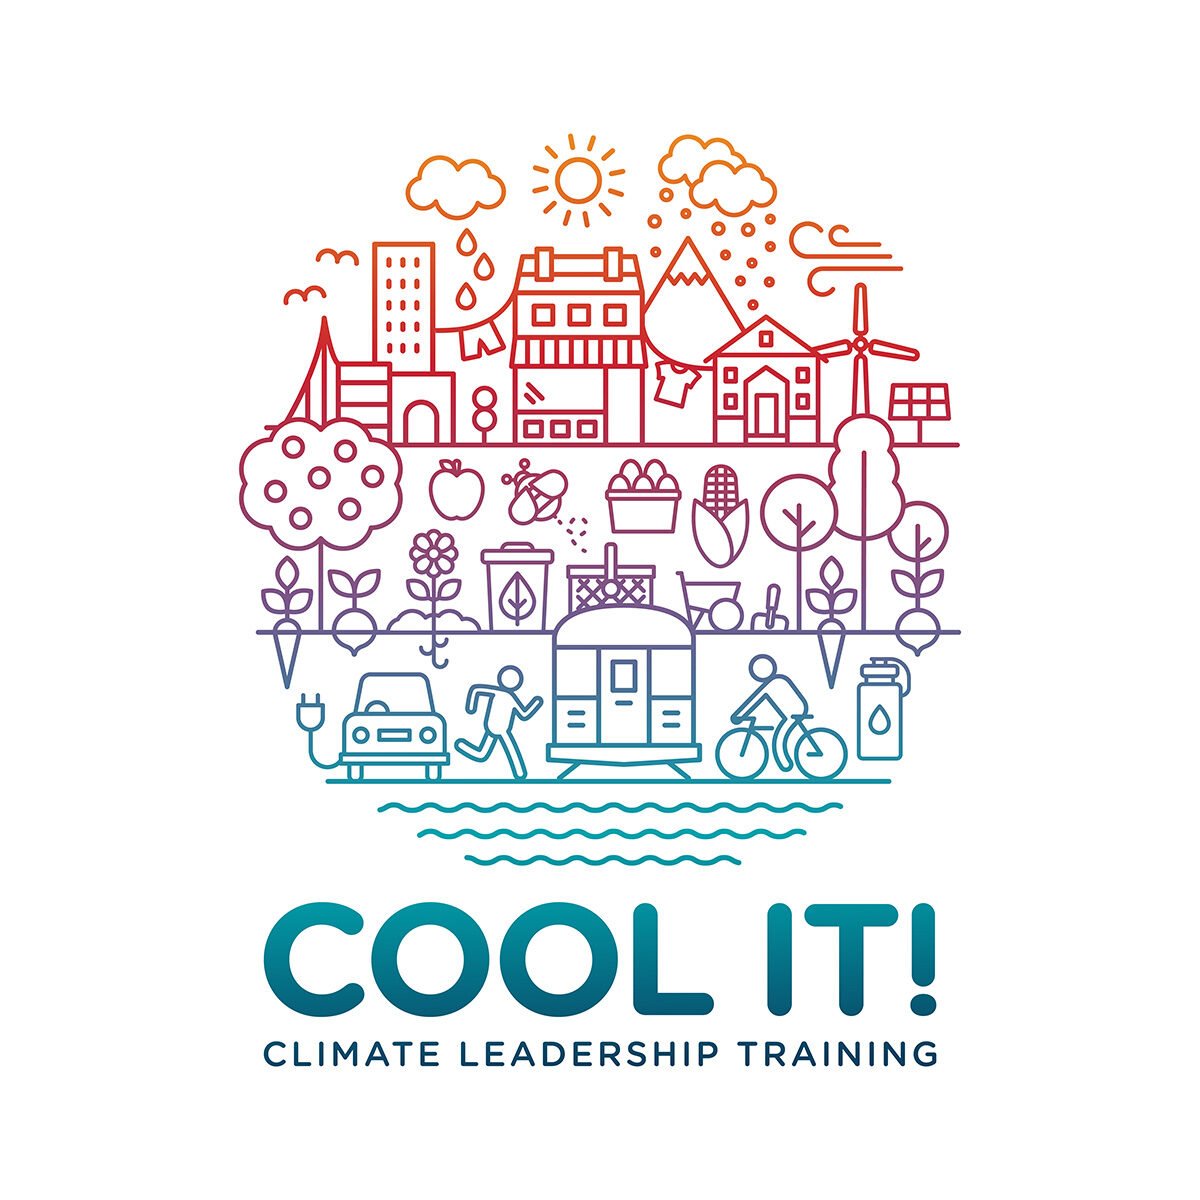 lindsay-mcghee-designs-bcsea-cool-it-climate-leadership-training-program-illustration-1200